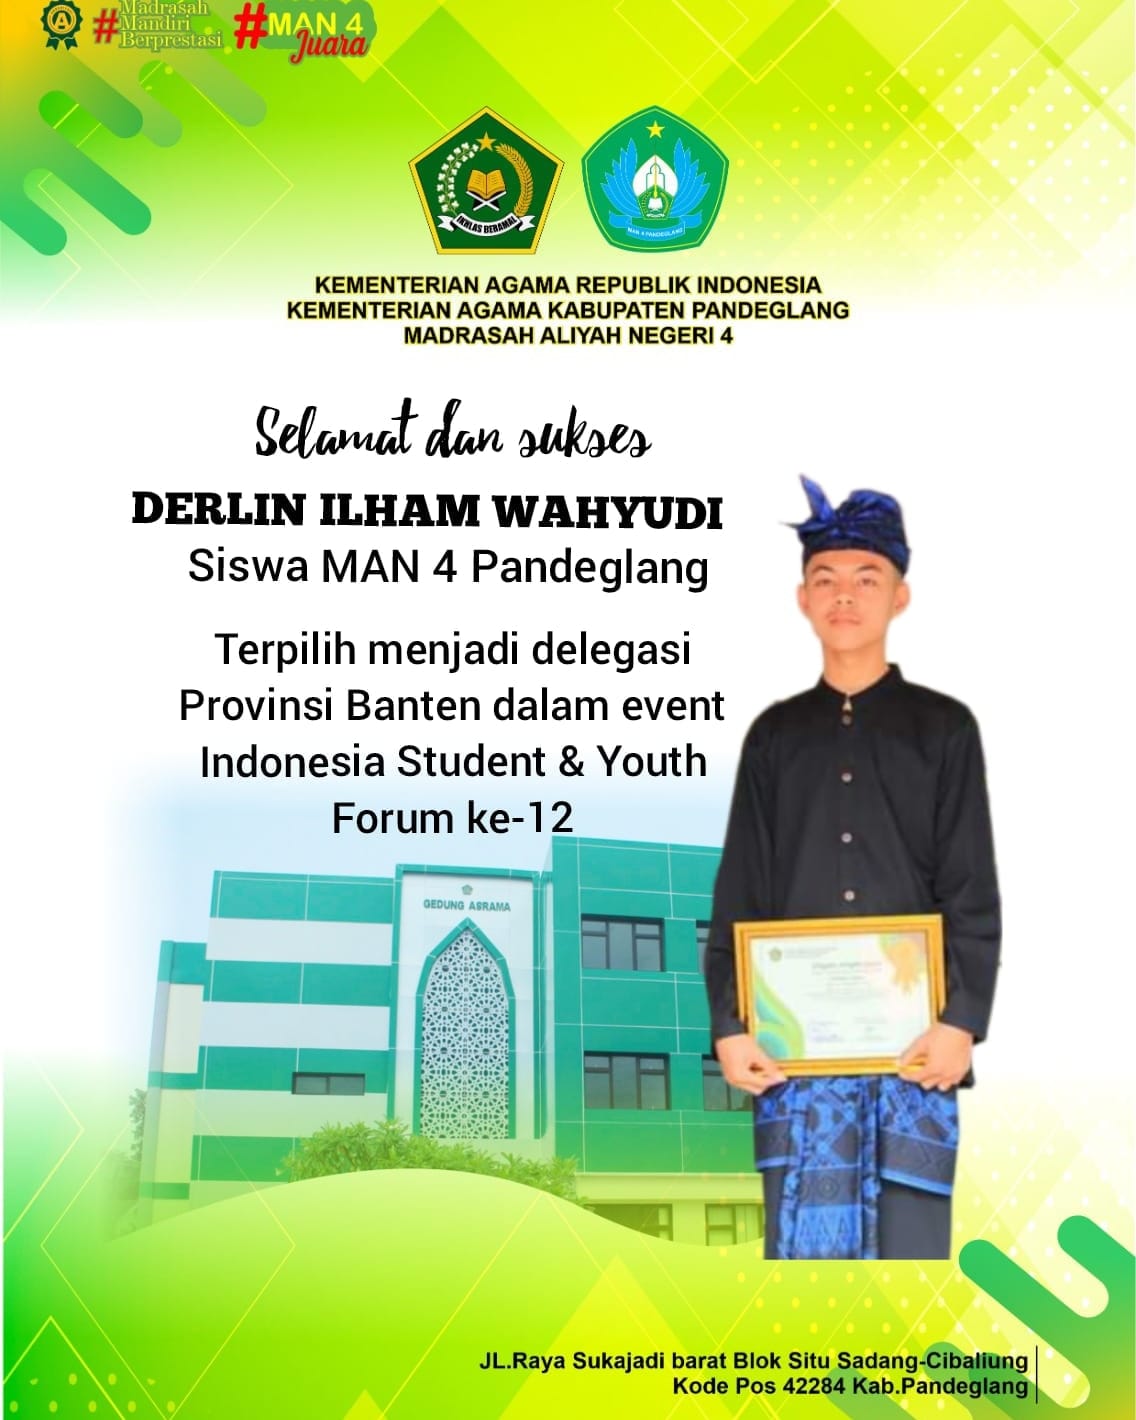 Derlin Ilham Wahyudi, Terpilih sebagai Delegasi Provinsi Banten